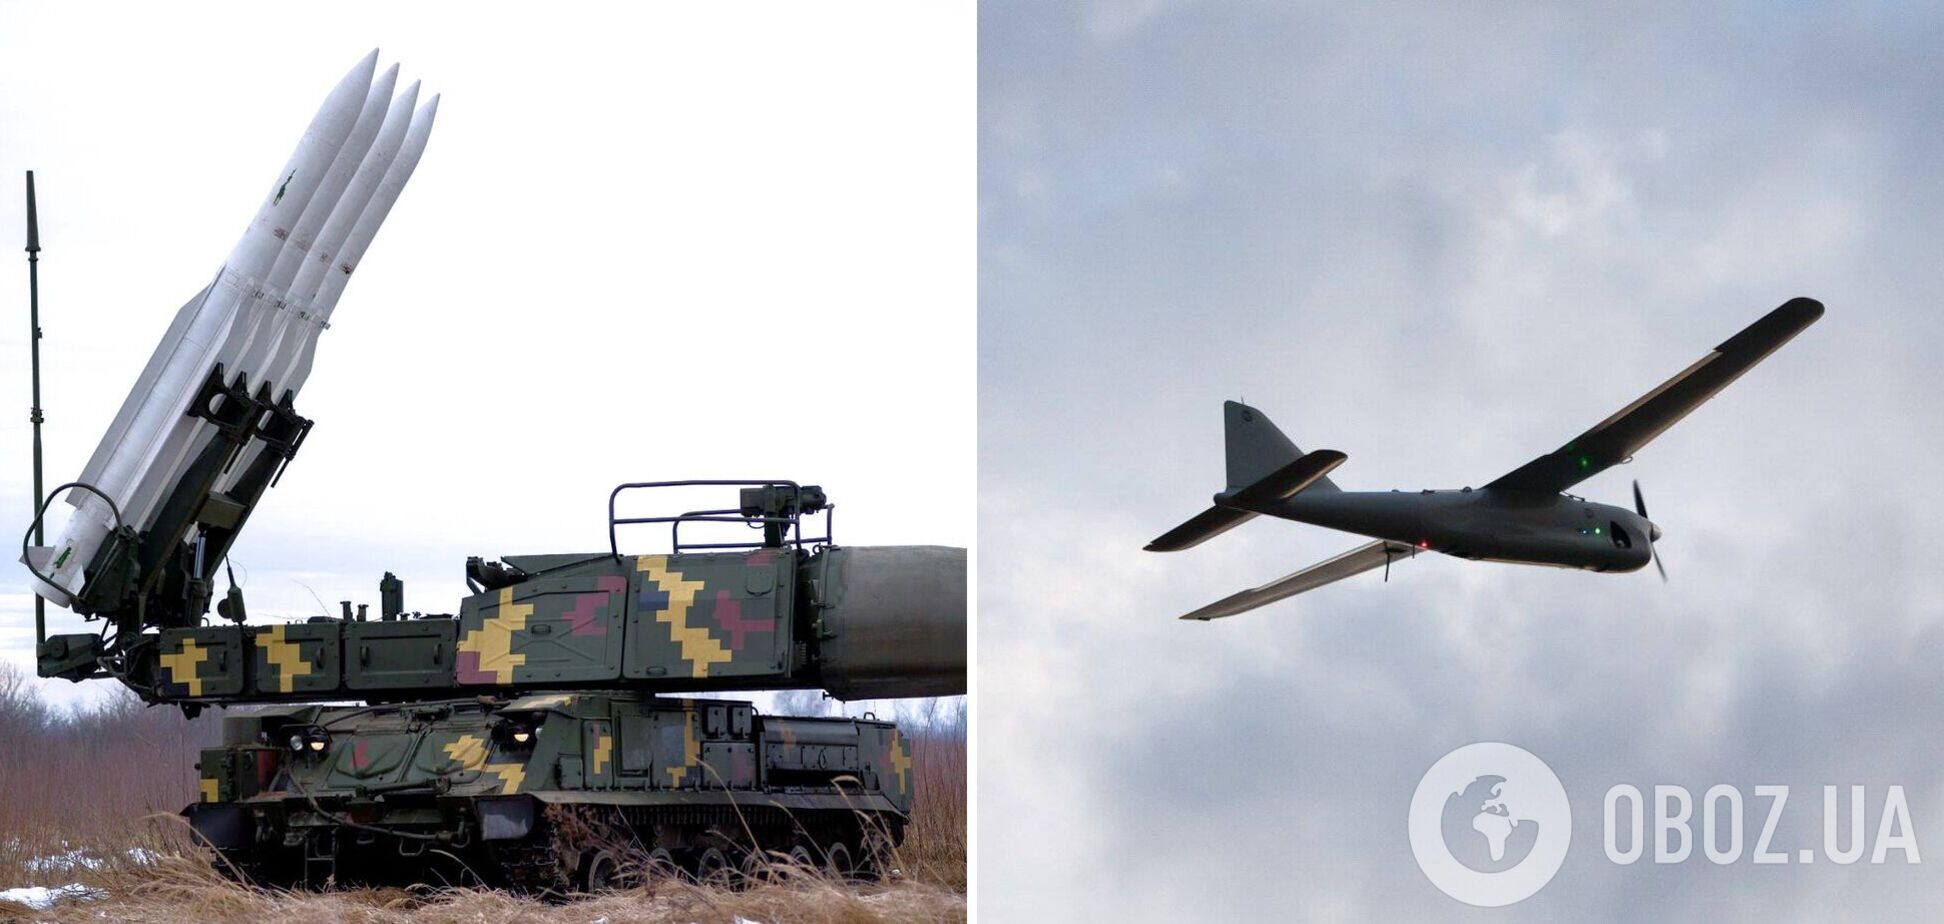 Защитники украинского неба за сутки уничтожили 7 вражеских воздушных целей и до 30 боевых бронированных машин